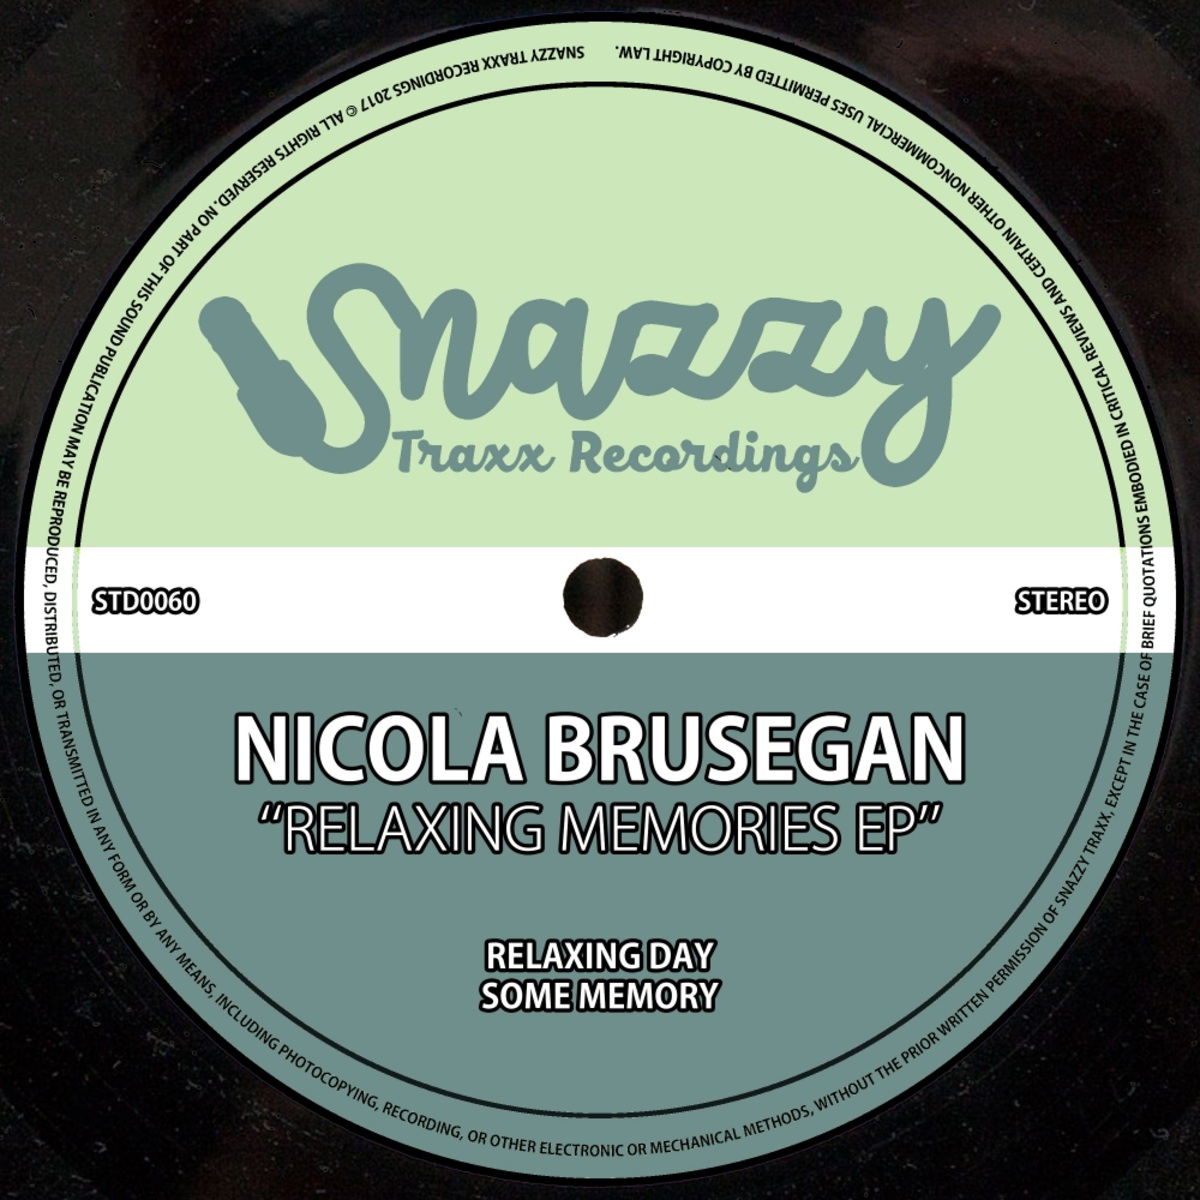 Nicola Brusegan - Relaxing Memories EP / Snazzy Traxx